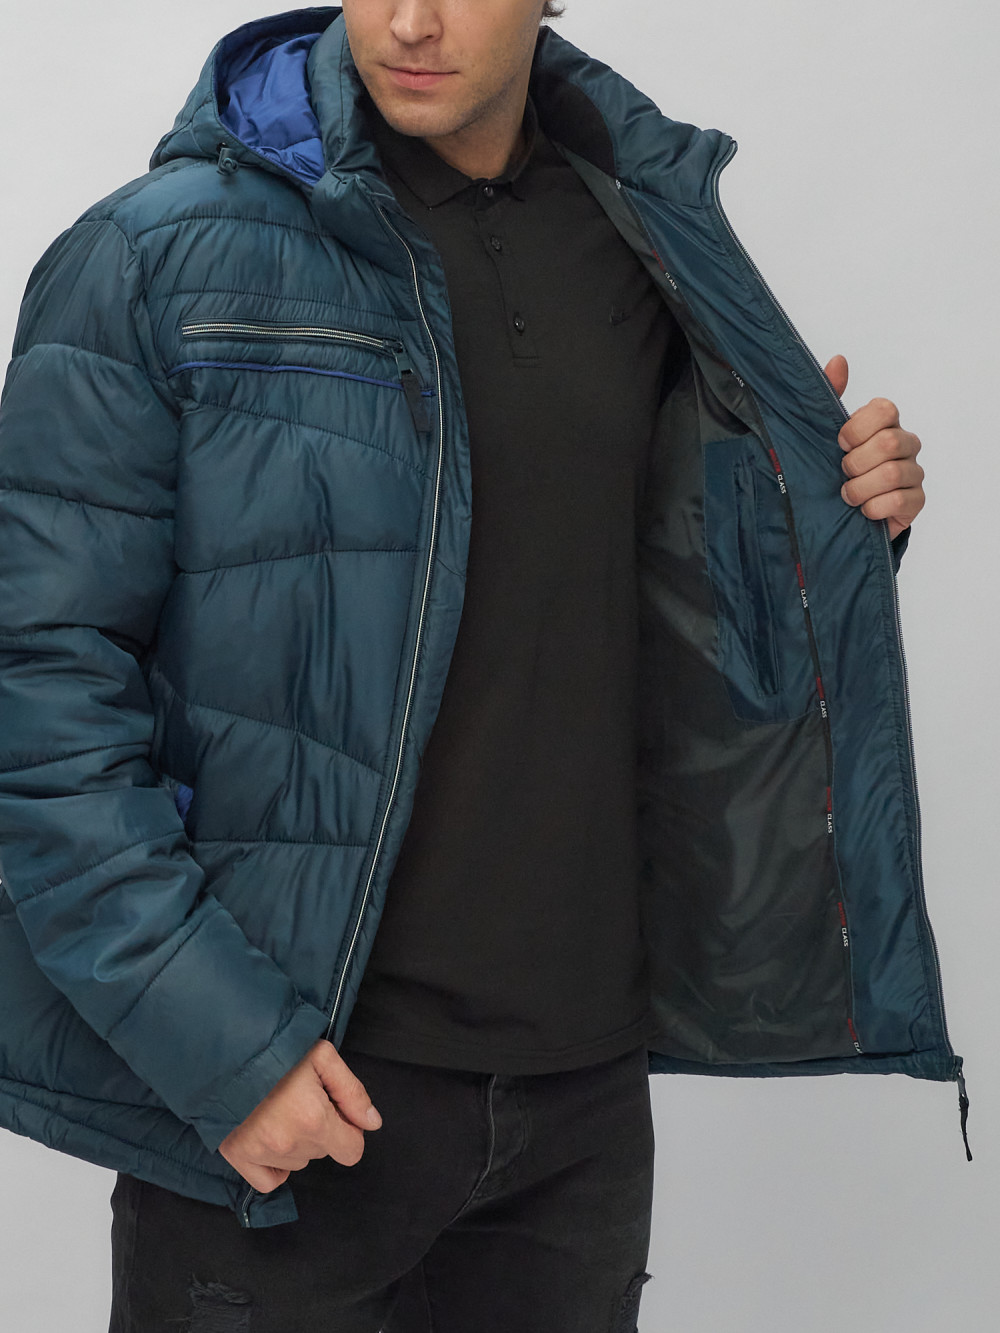 Купить куртку мужскую спортивную весеннюю оптом от производителя недорого в Москве 62188TS 1